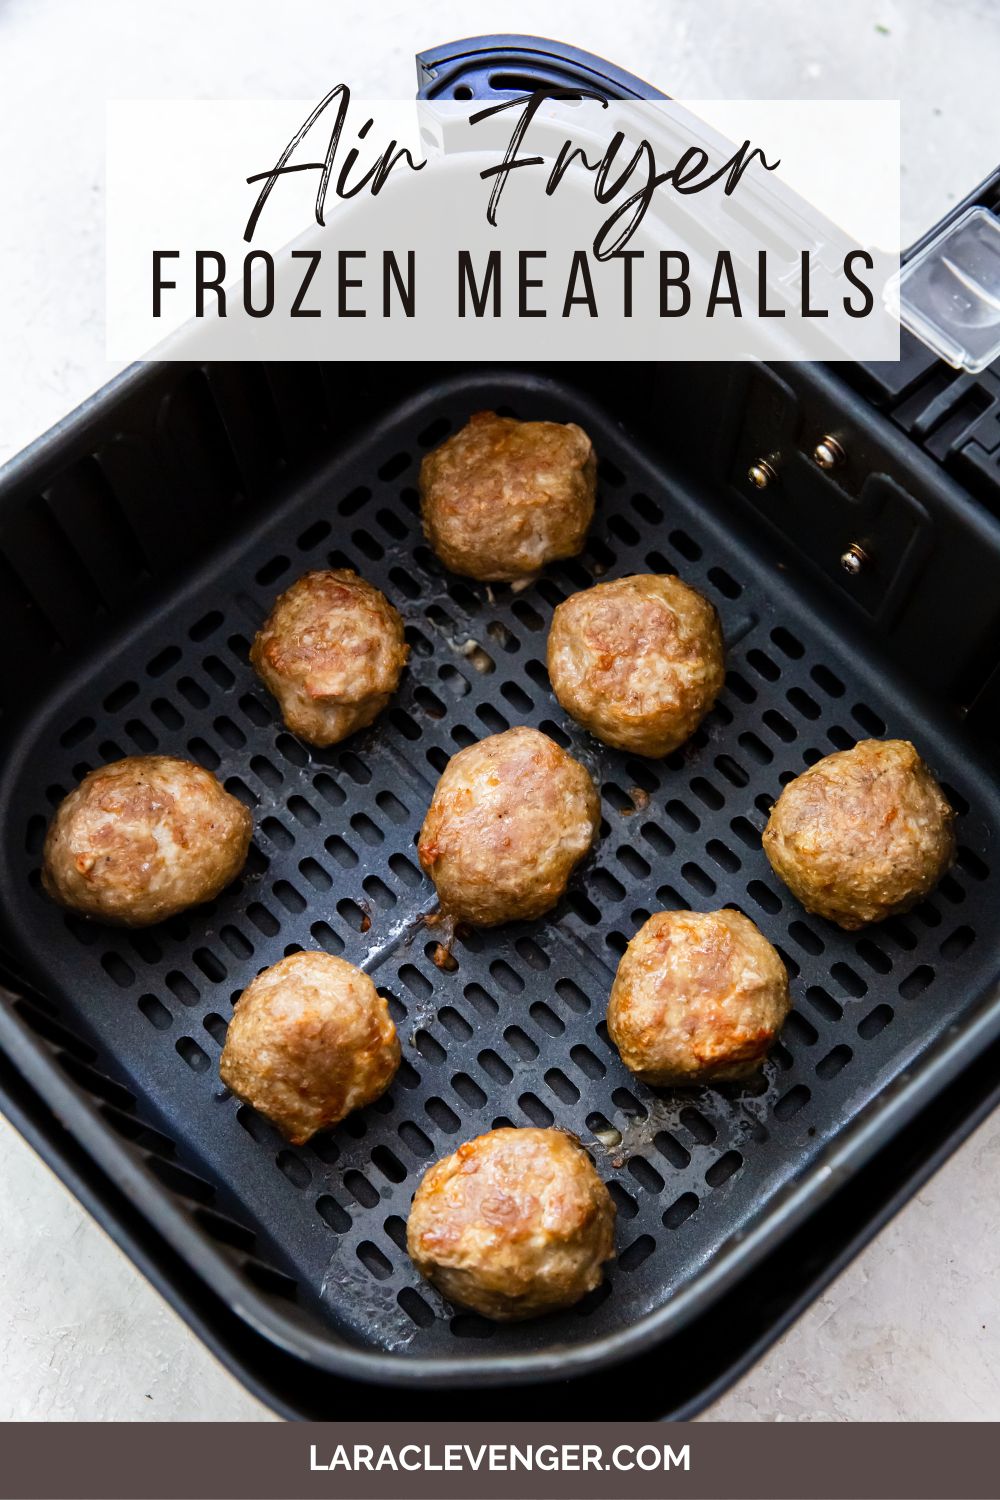 pin of frozen turkey meatballs in the air fryer basket